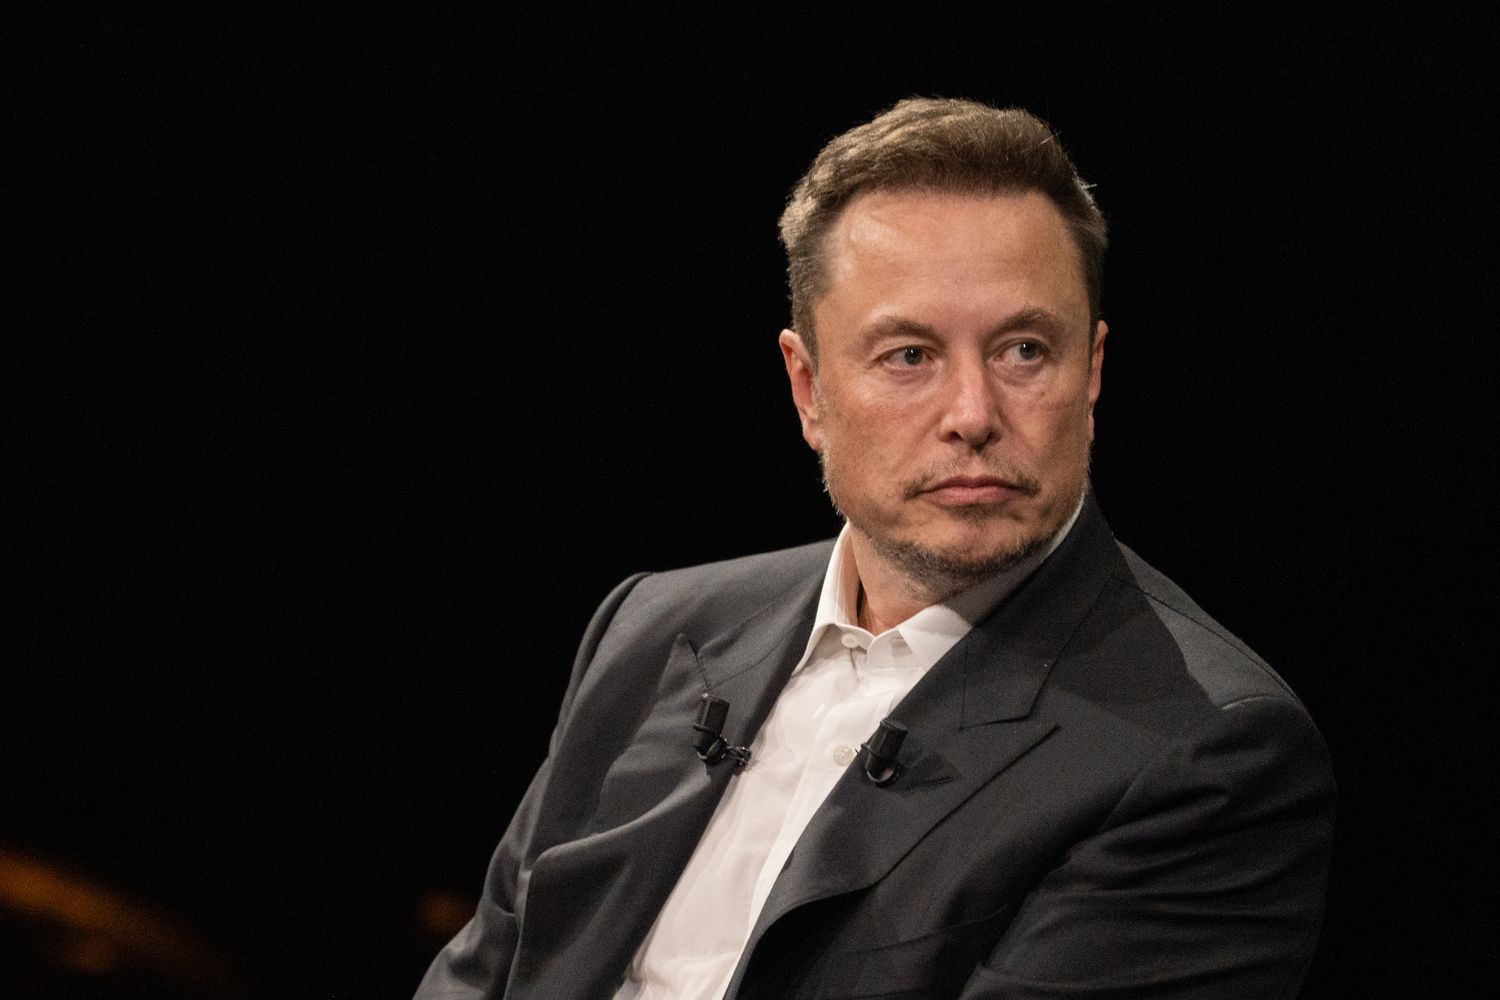 Elon musk sitting in chair looking pensive